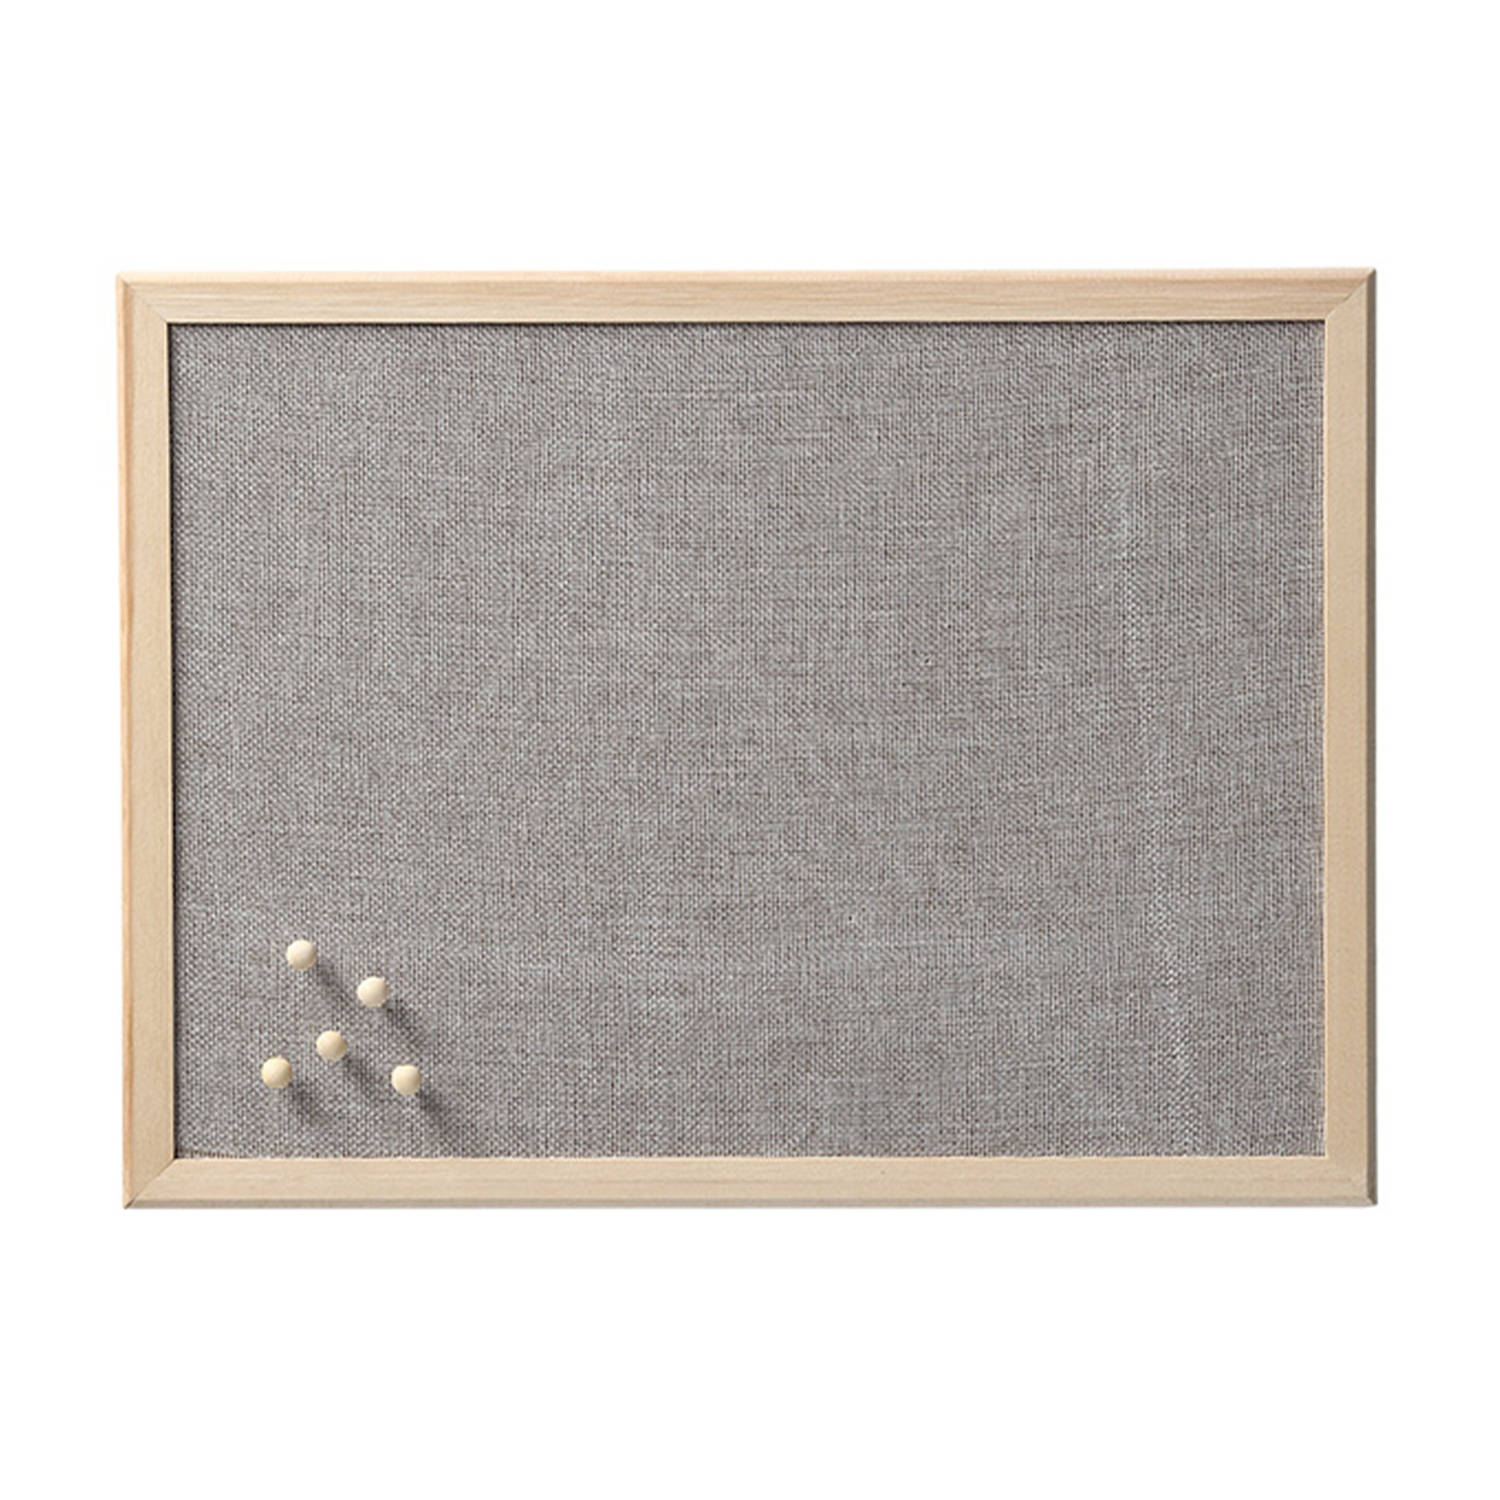 Prikbord textiel lichtgrijs 40 x 60 cm incl. punaises luxe Prikborden